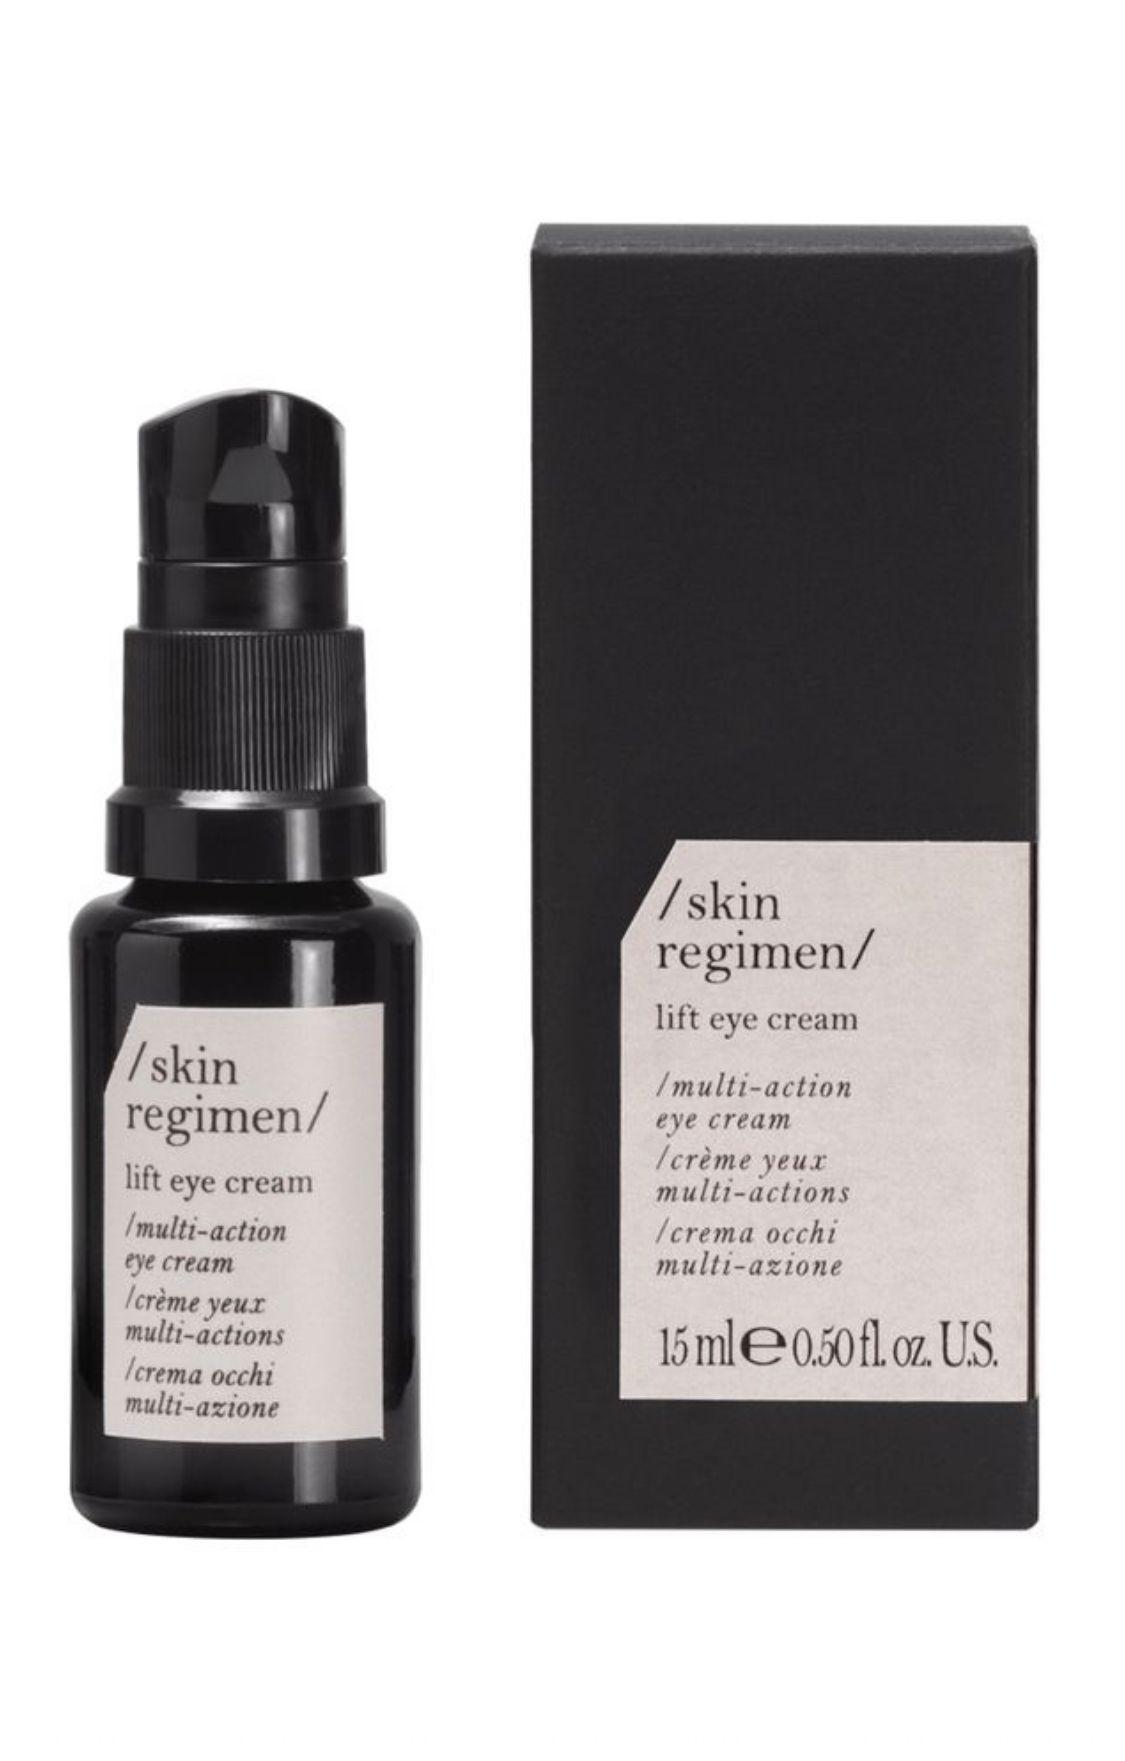 Skin Regimen Lift eye cream